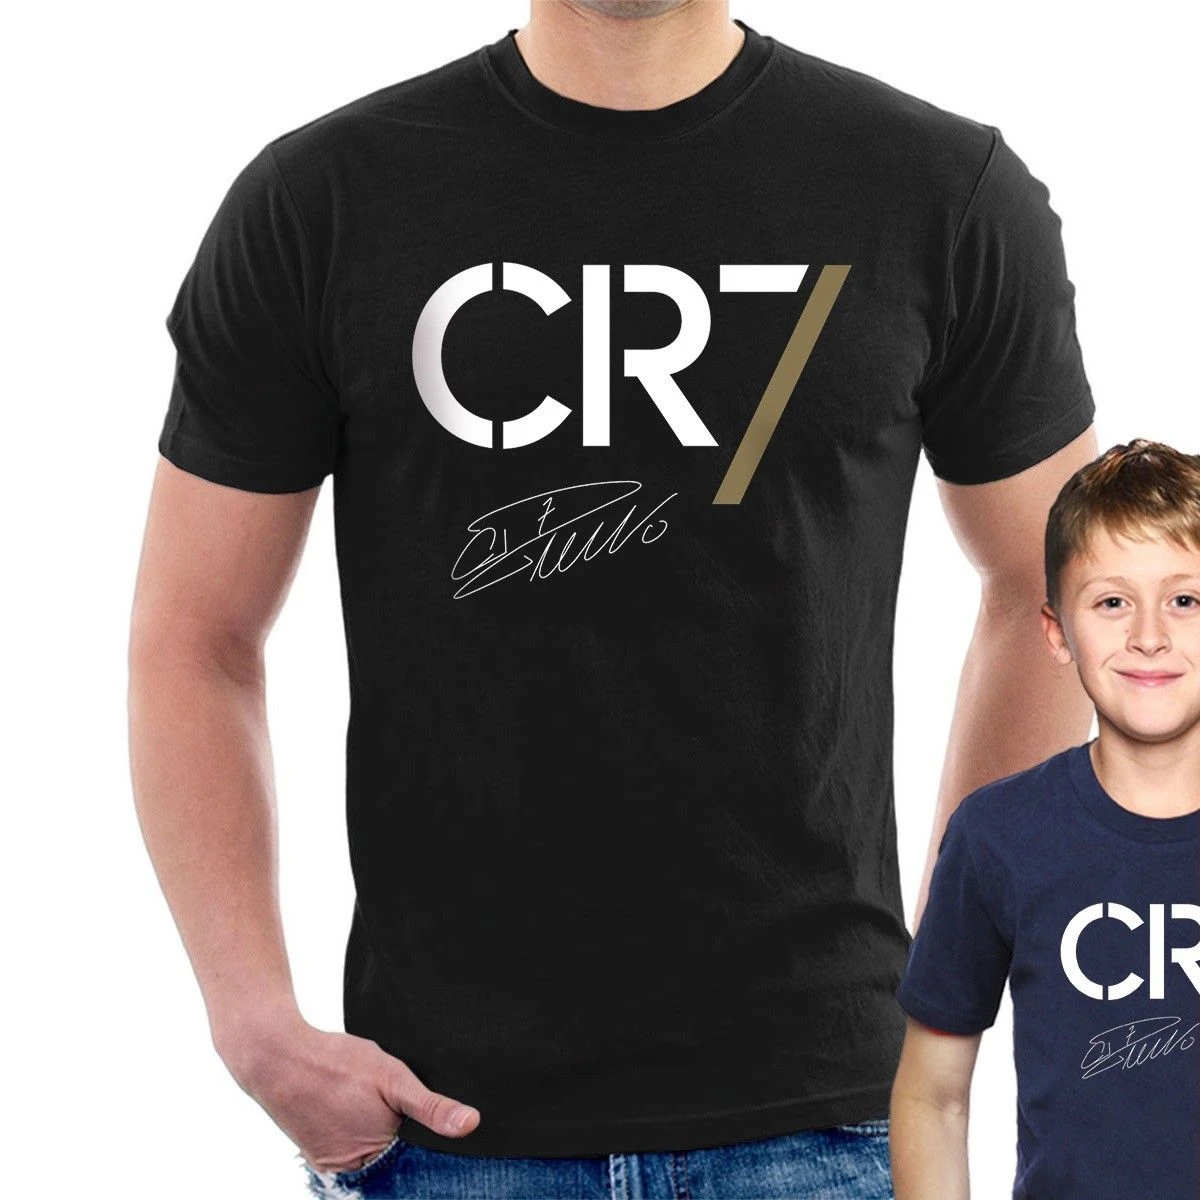 CR7 camiseta Cristiano Ronaldo Portugal Casual pride camiseta hombres Unisex camiseta envío gratis camisetas divertidas|Camisetas| - AliExpress